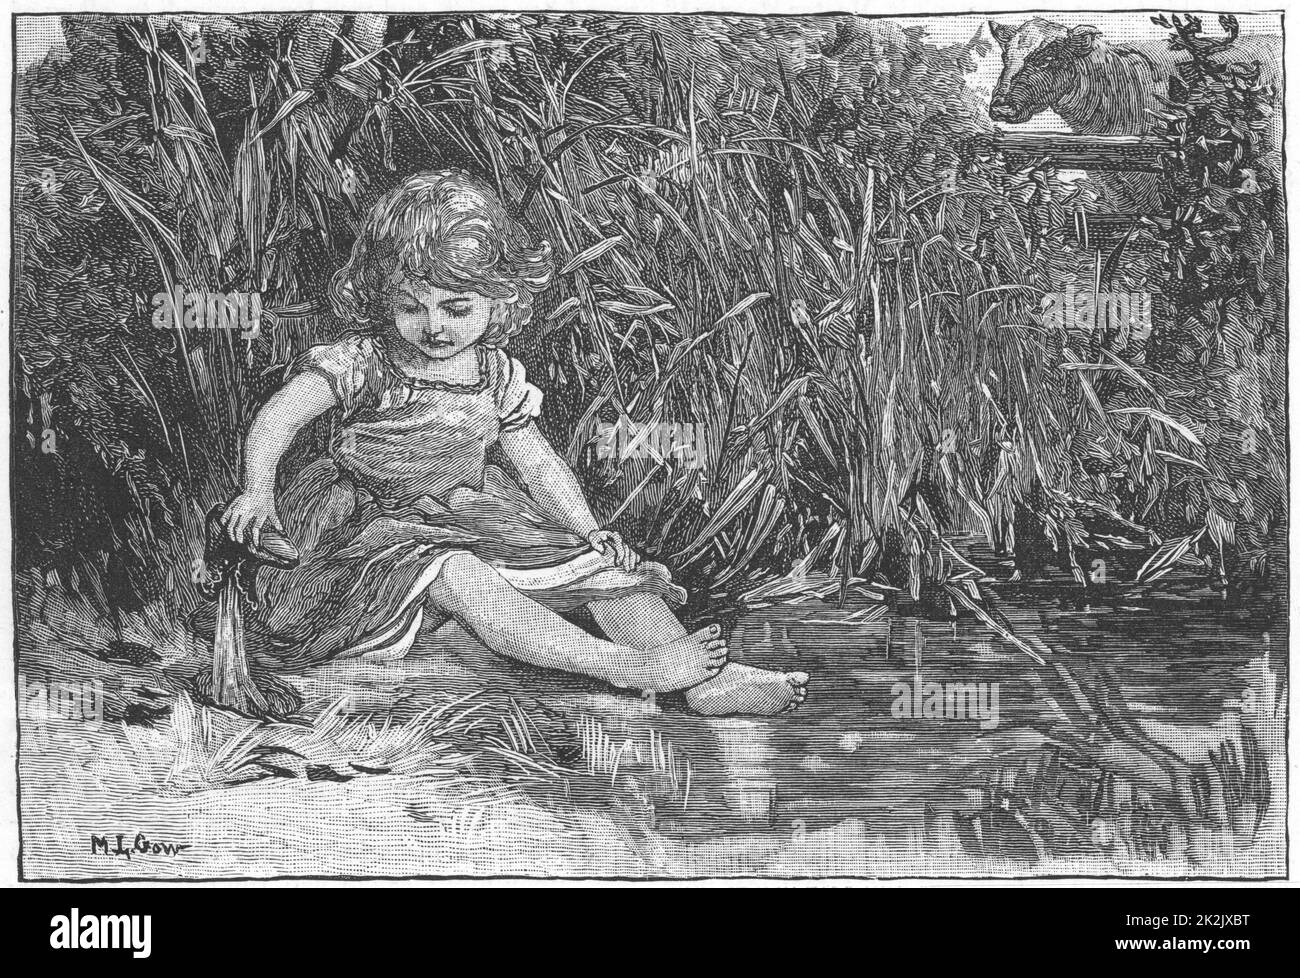 „Silas Marner“ von George Eliot, 1861. Eppie, mit drei Jahren, ist aus dem Haus geschlüpft, während Silas Marner beschäftigt war, und amüsiert sich am Teich. Illustration von Mary L. Gow (1851-1929) veröffentlicht 1882. Stockfoto